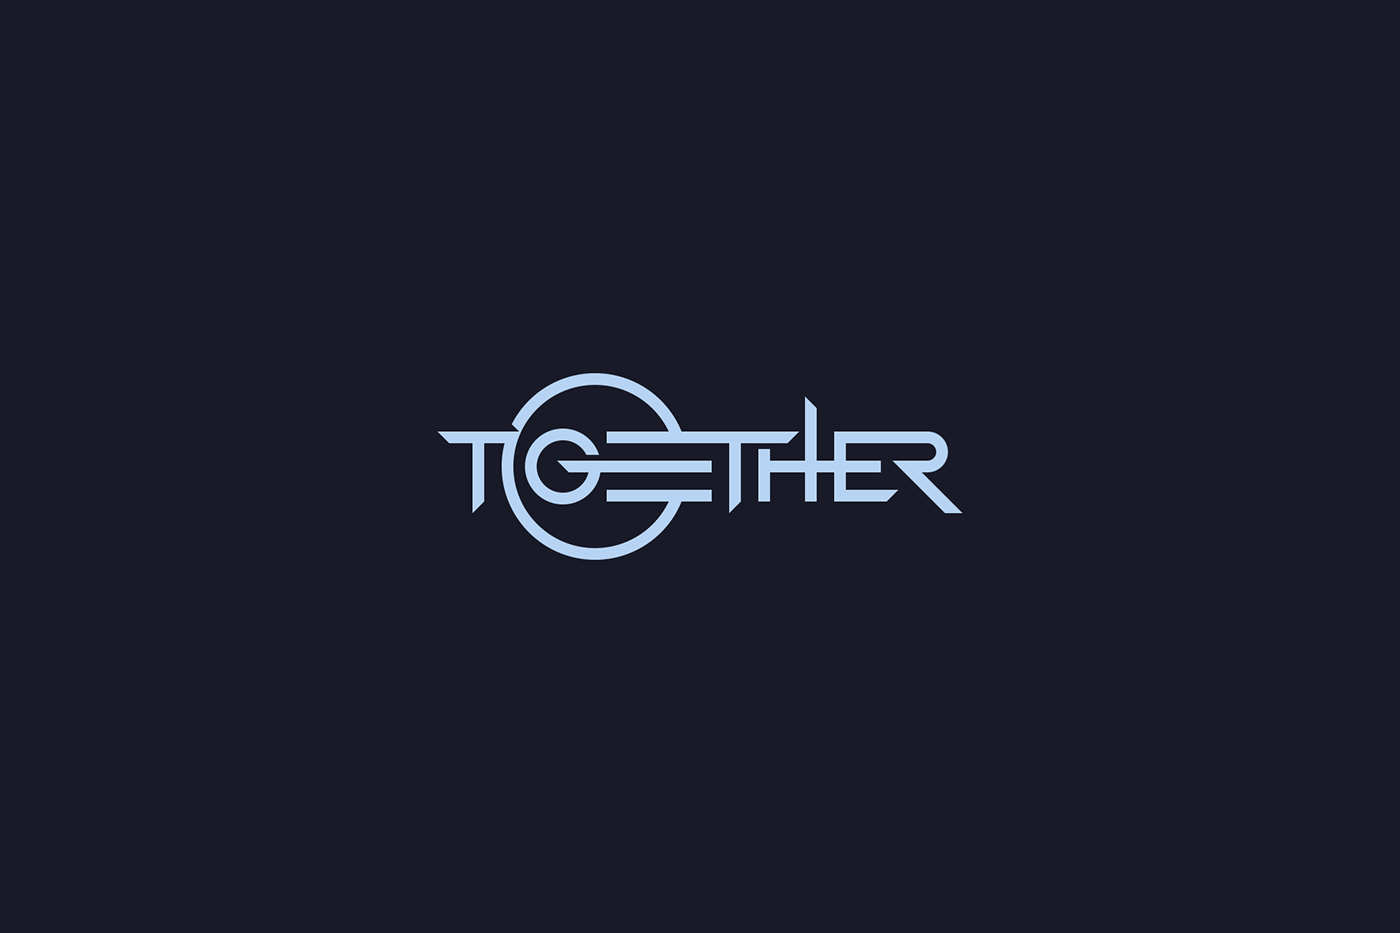 Third Party together Logo Design artwork CD cover World Tour selfie Album dj edm